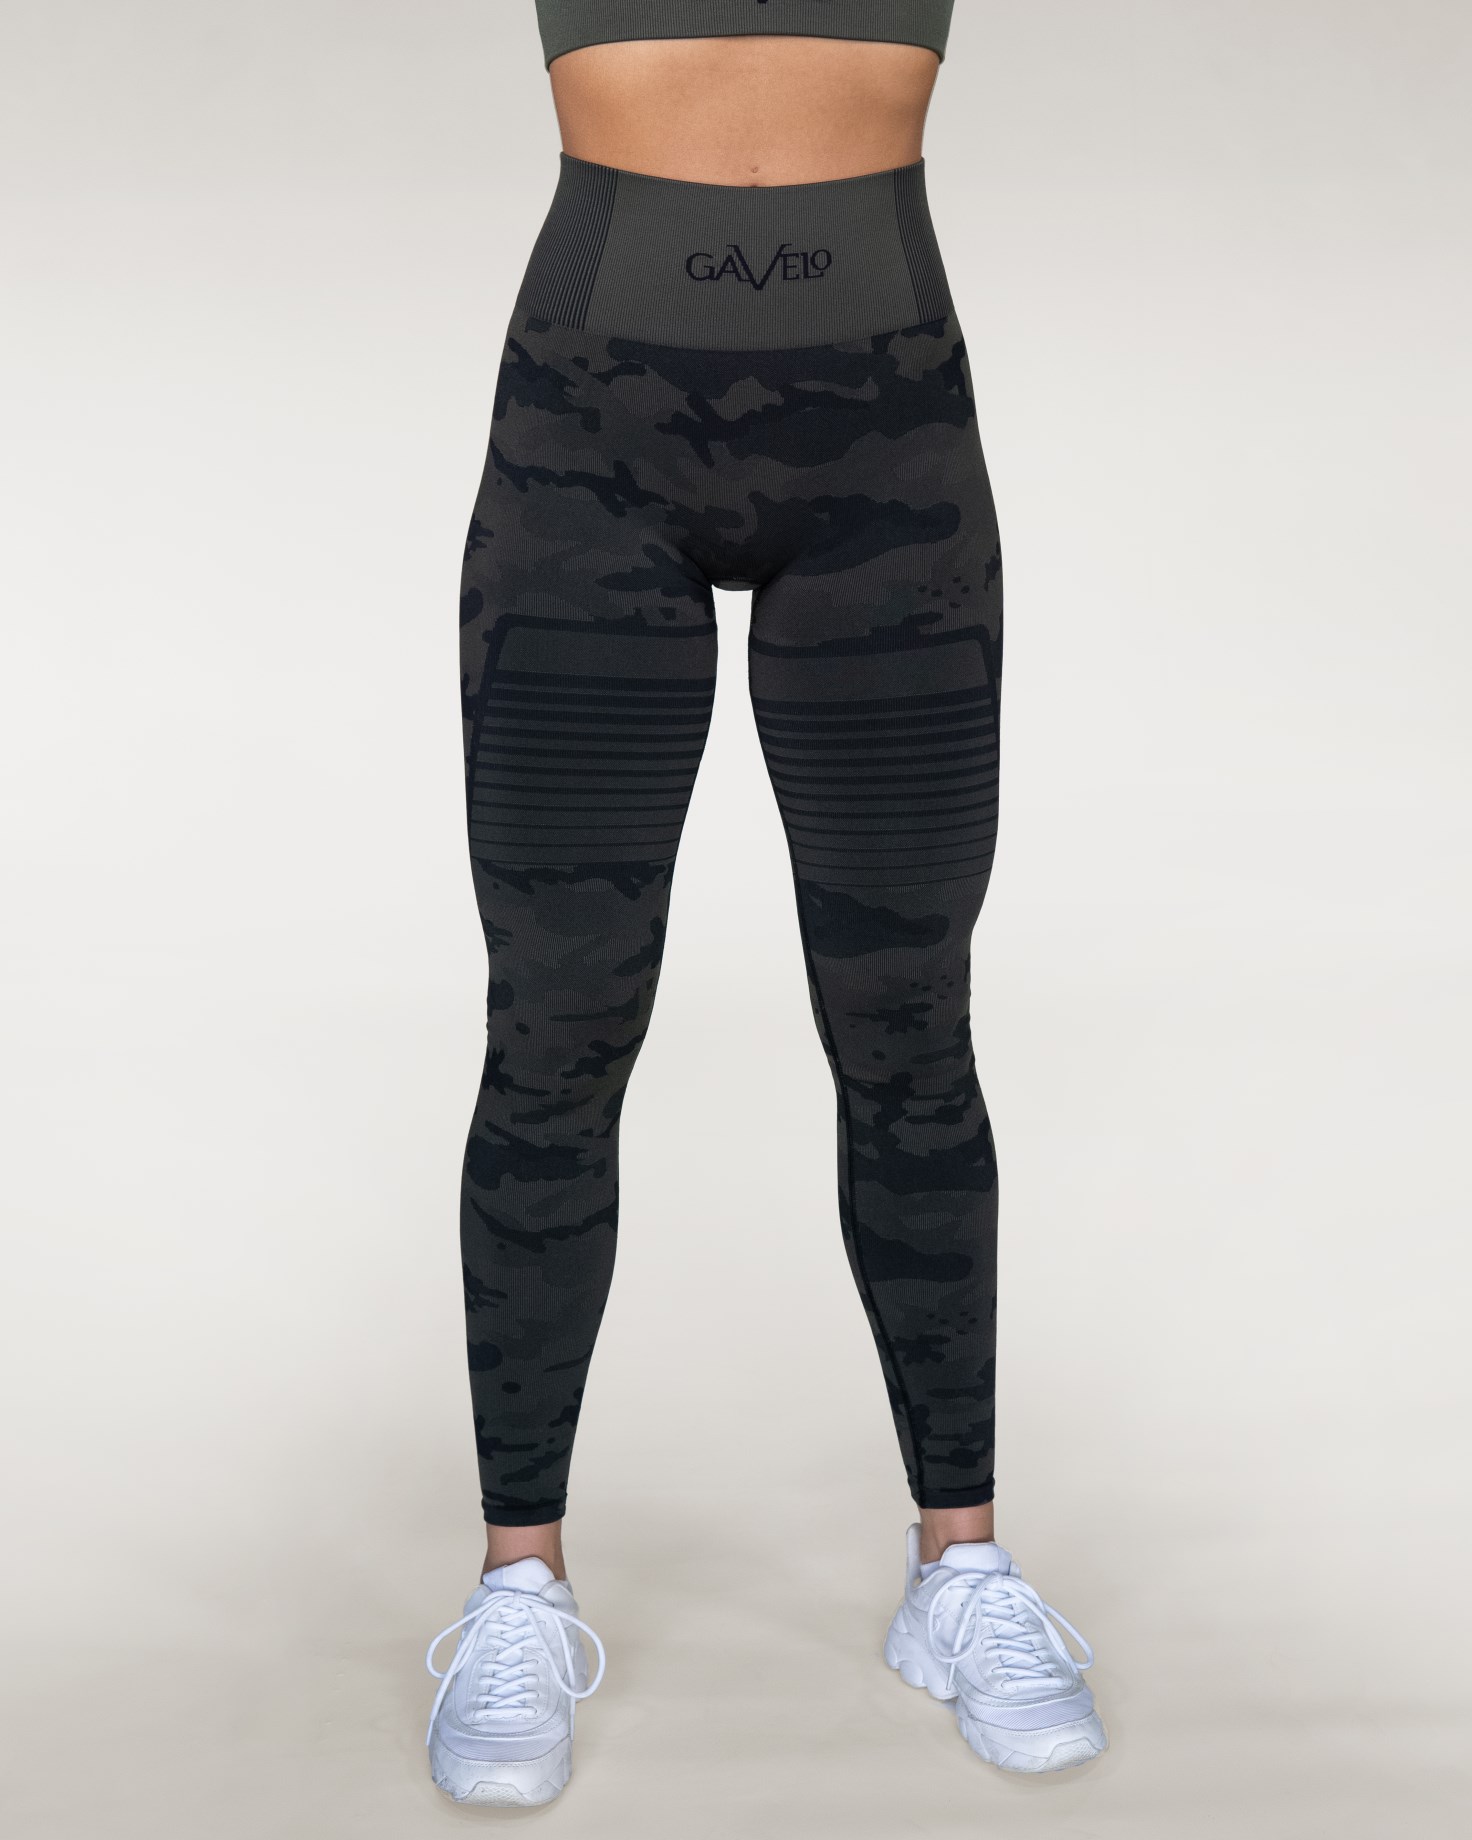 Gavelo Plain Black leggings – BigZ Fit